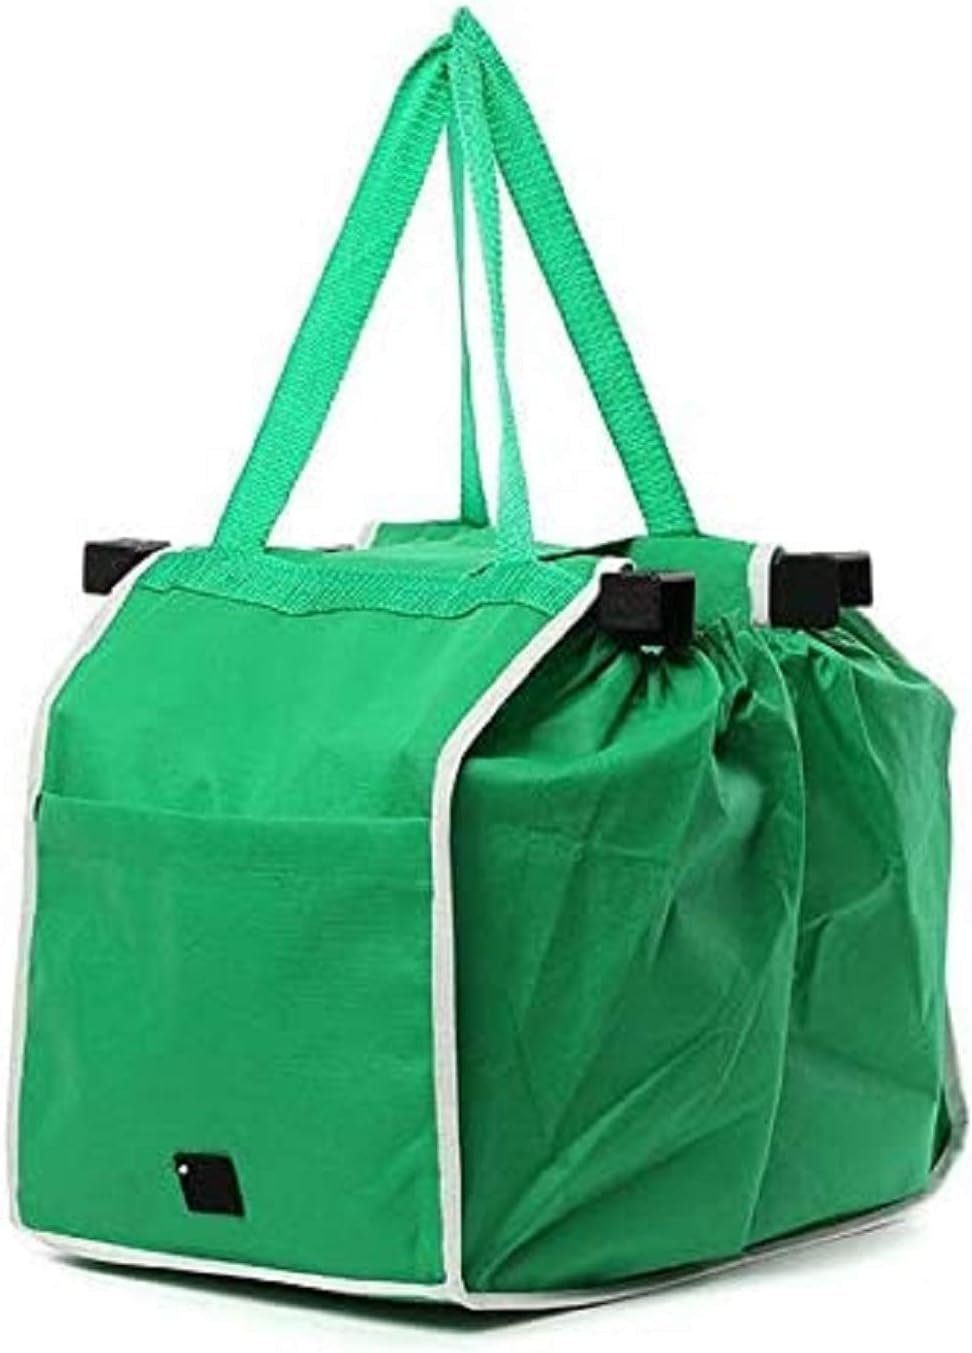 Provance Einkaufskorb Faltbare Einkaufswagentasche universal passend grün 55x29x24cm